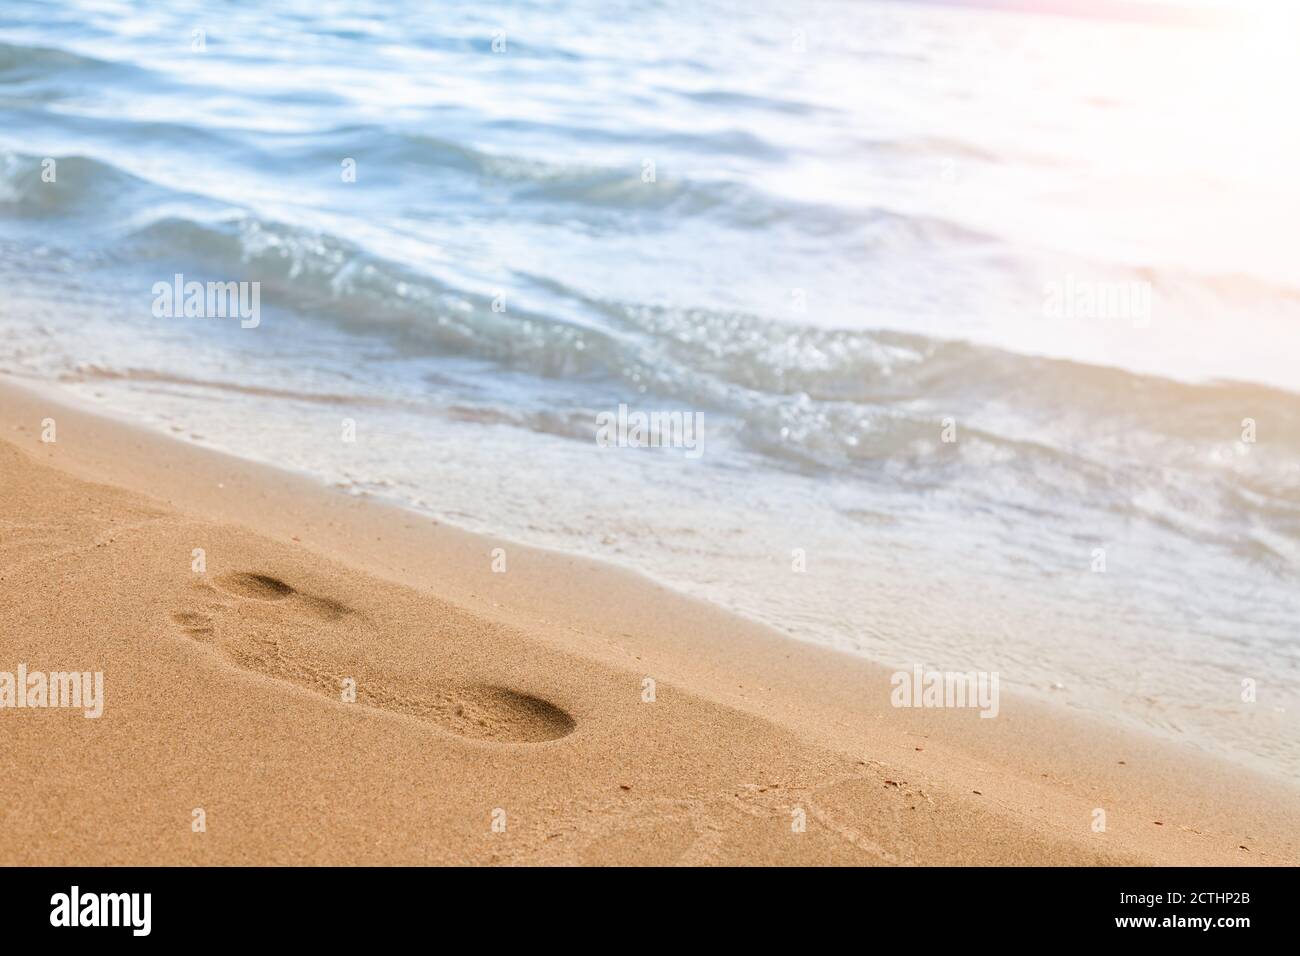 Primo piano della spiaggia con l'impronta di un uomo sulla sabbia gialla lungo la linea dell'onda blu del mare in una giornata estiva di sole. Sfondo per l'annuncio Foto Stock